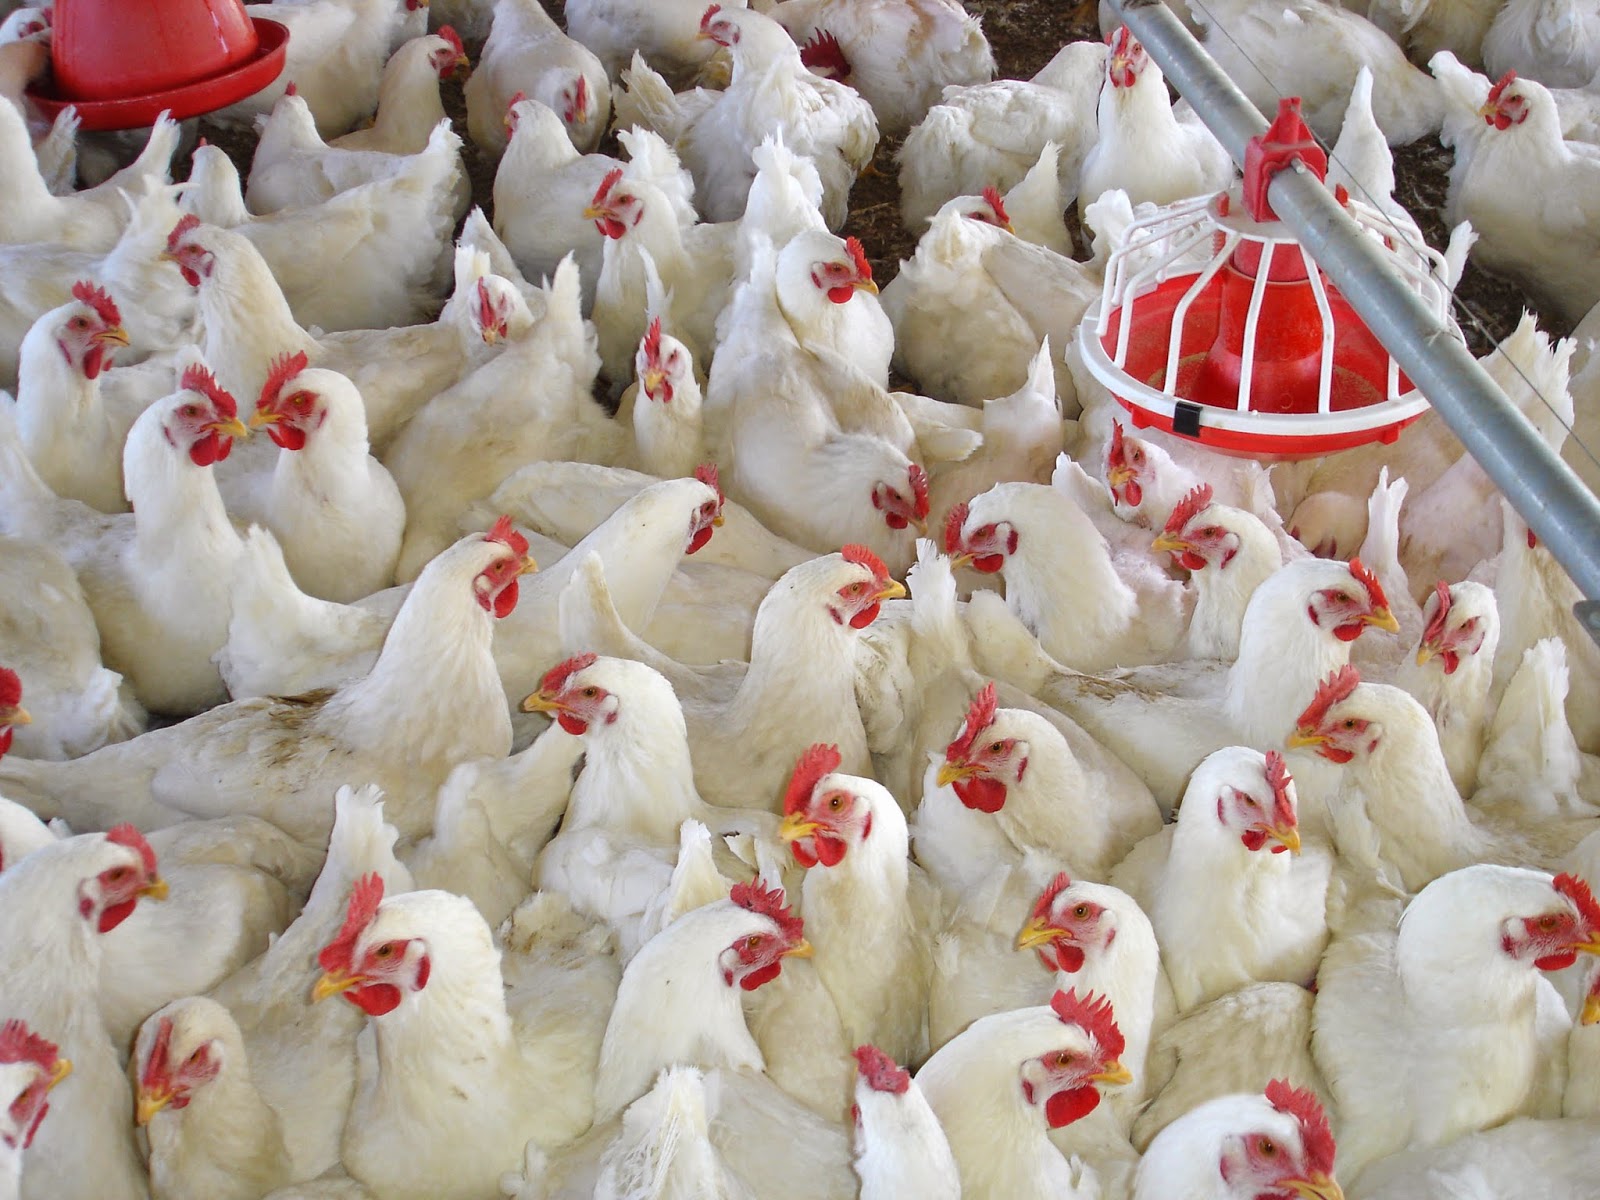 الزراعة: 21 مليون دجاجة حاجة السوق الأردني في رمضان